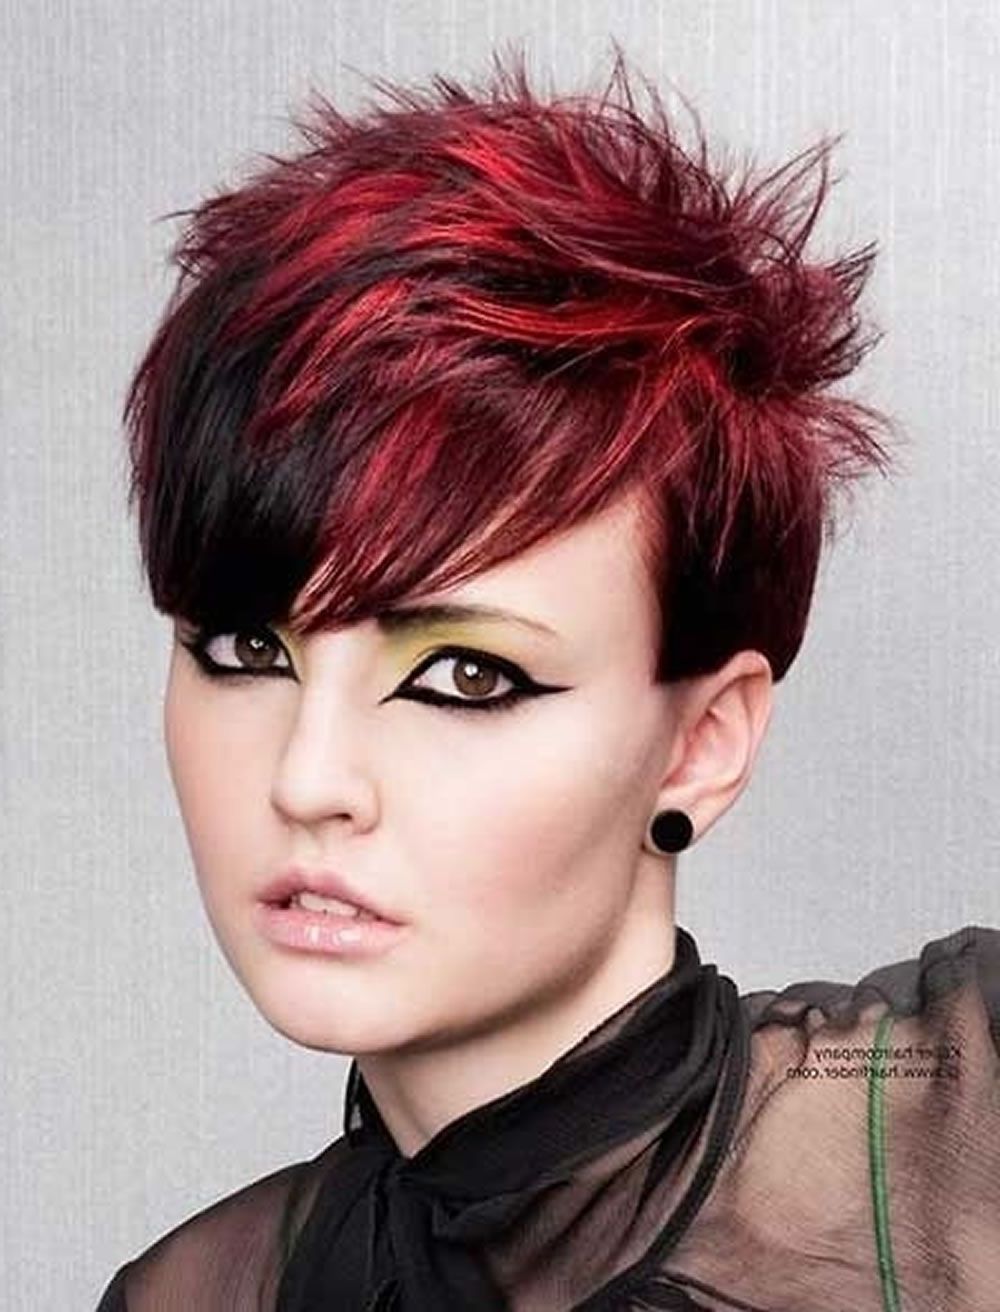 Rote Haarfarbe Für Kurze Frisuren | Cooles Haarschnitt Tutorial Für Inside Red And Black Short Hairstyles (Photo 3 of 25)